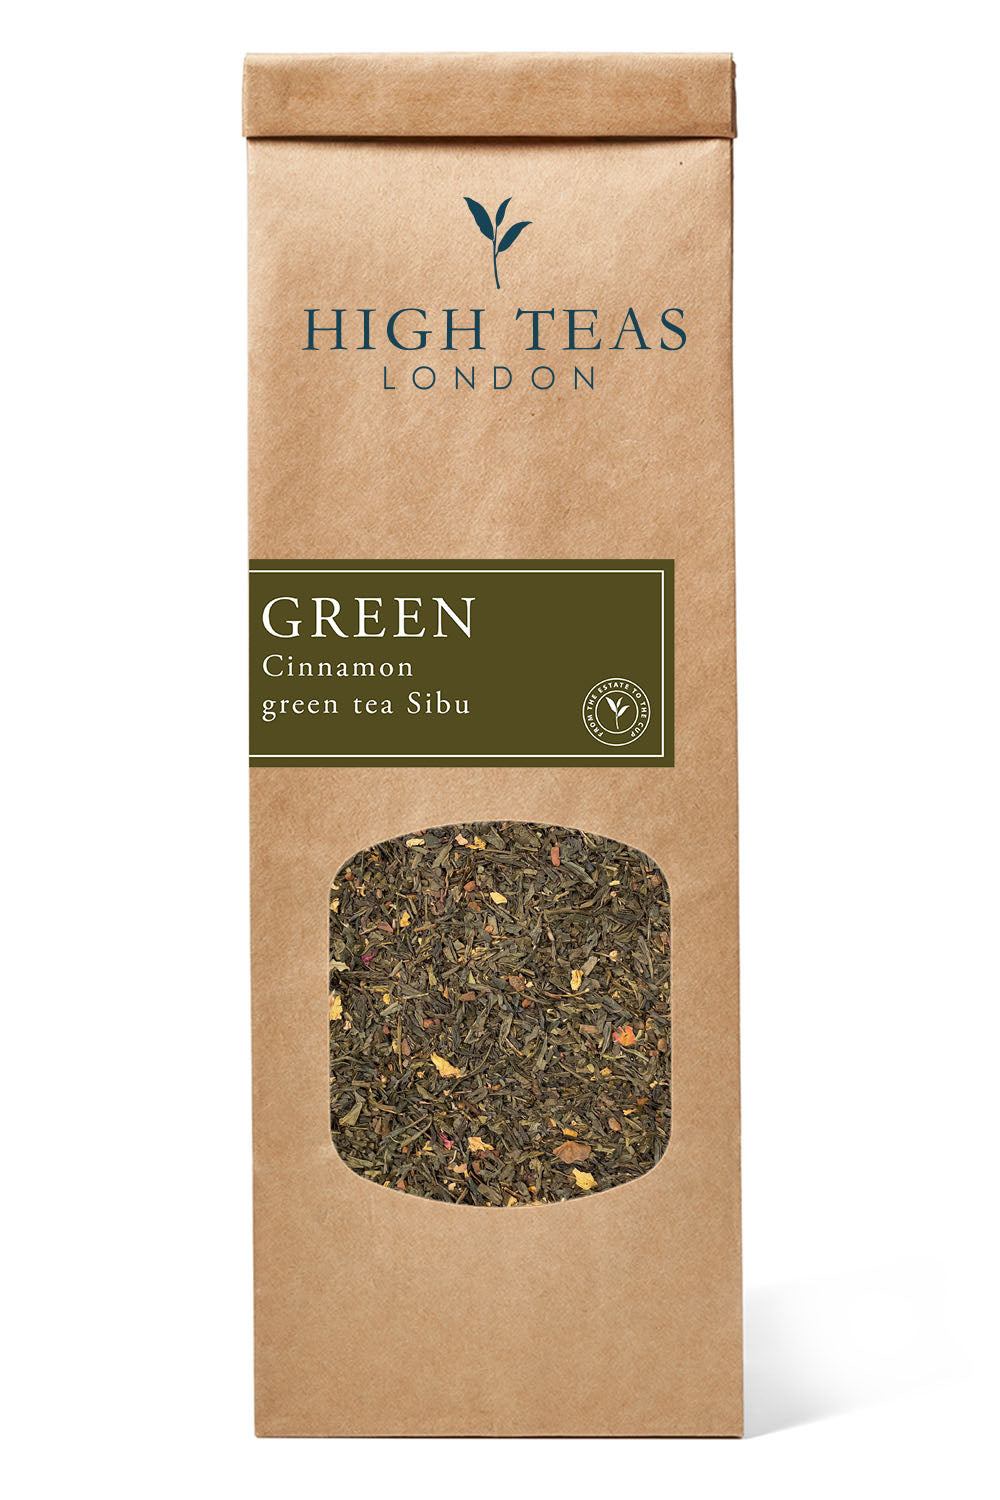 Cinnamon Sibu Green Tea-50g-Loose Leaf Tea-High Teas